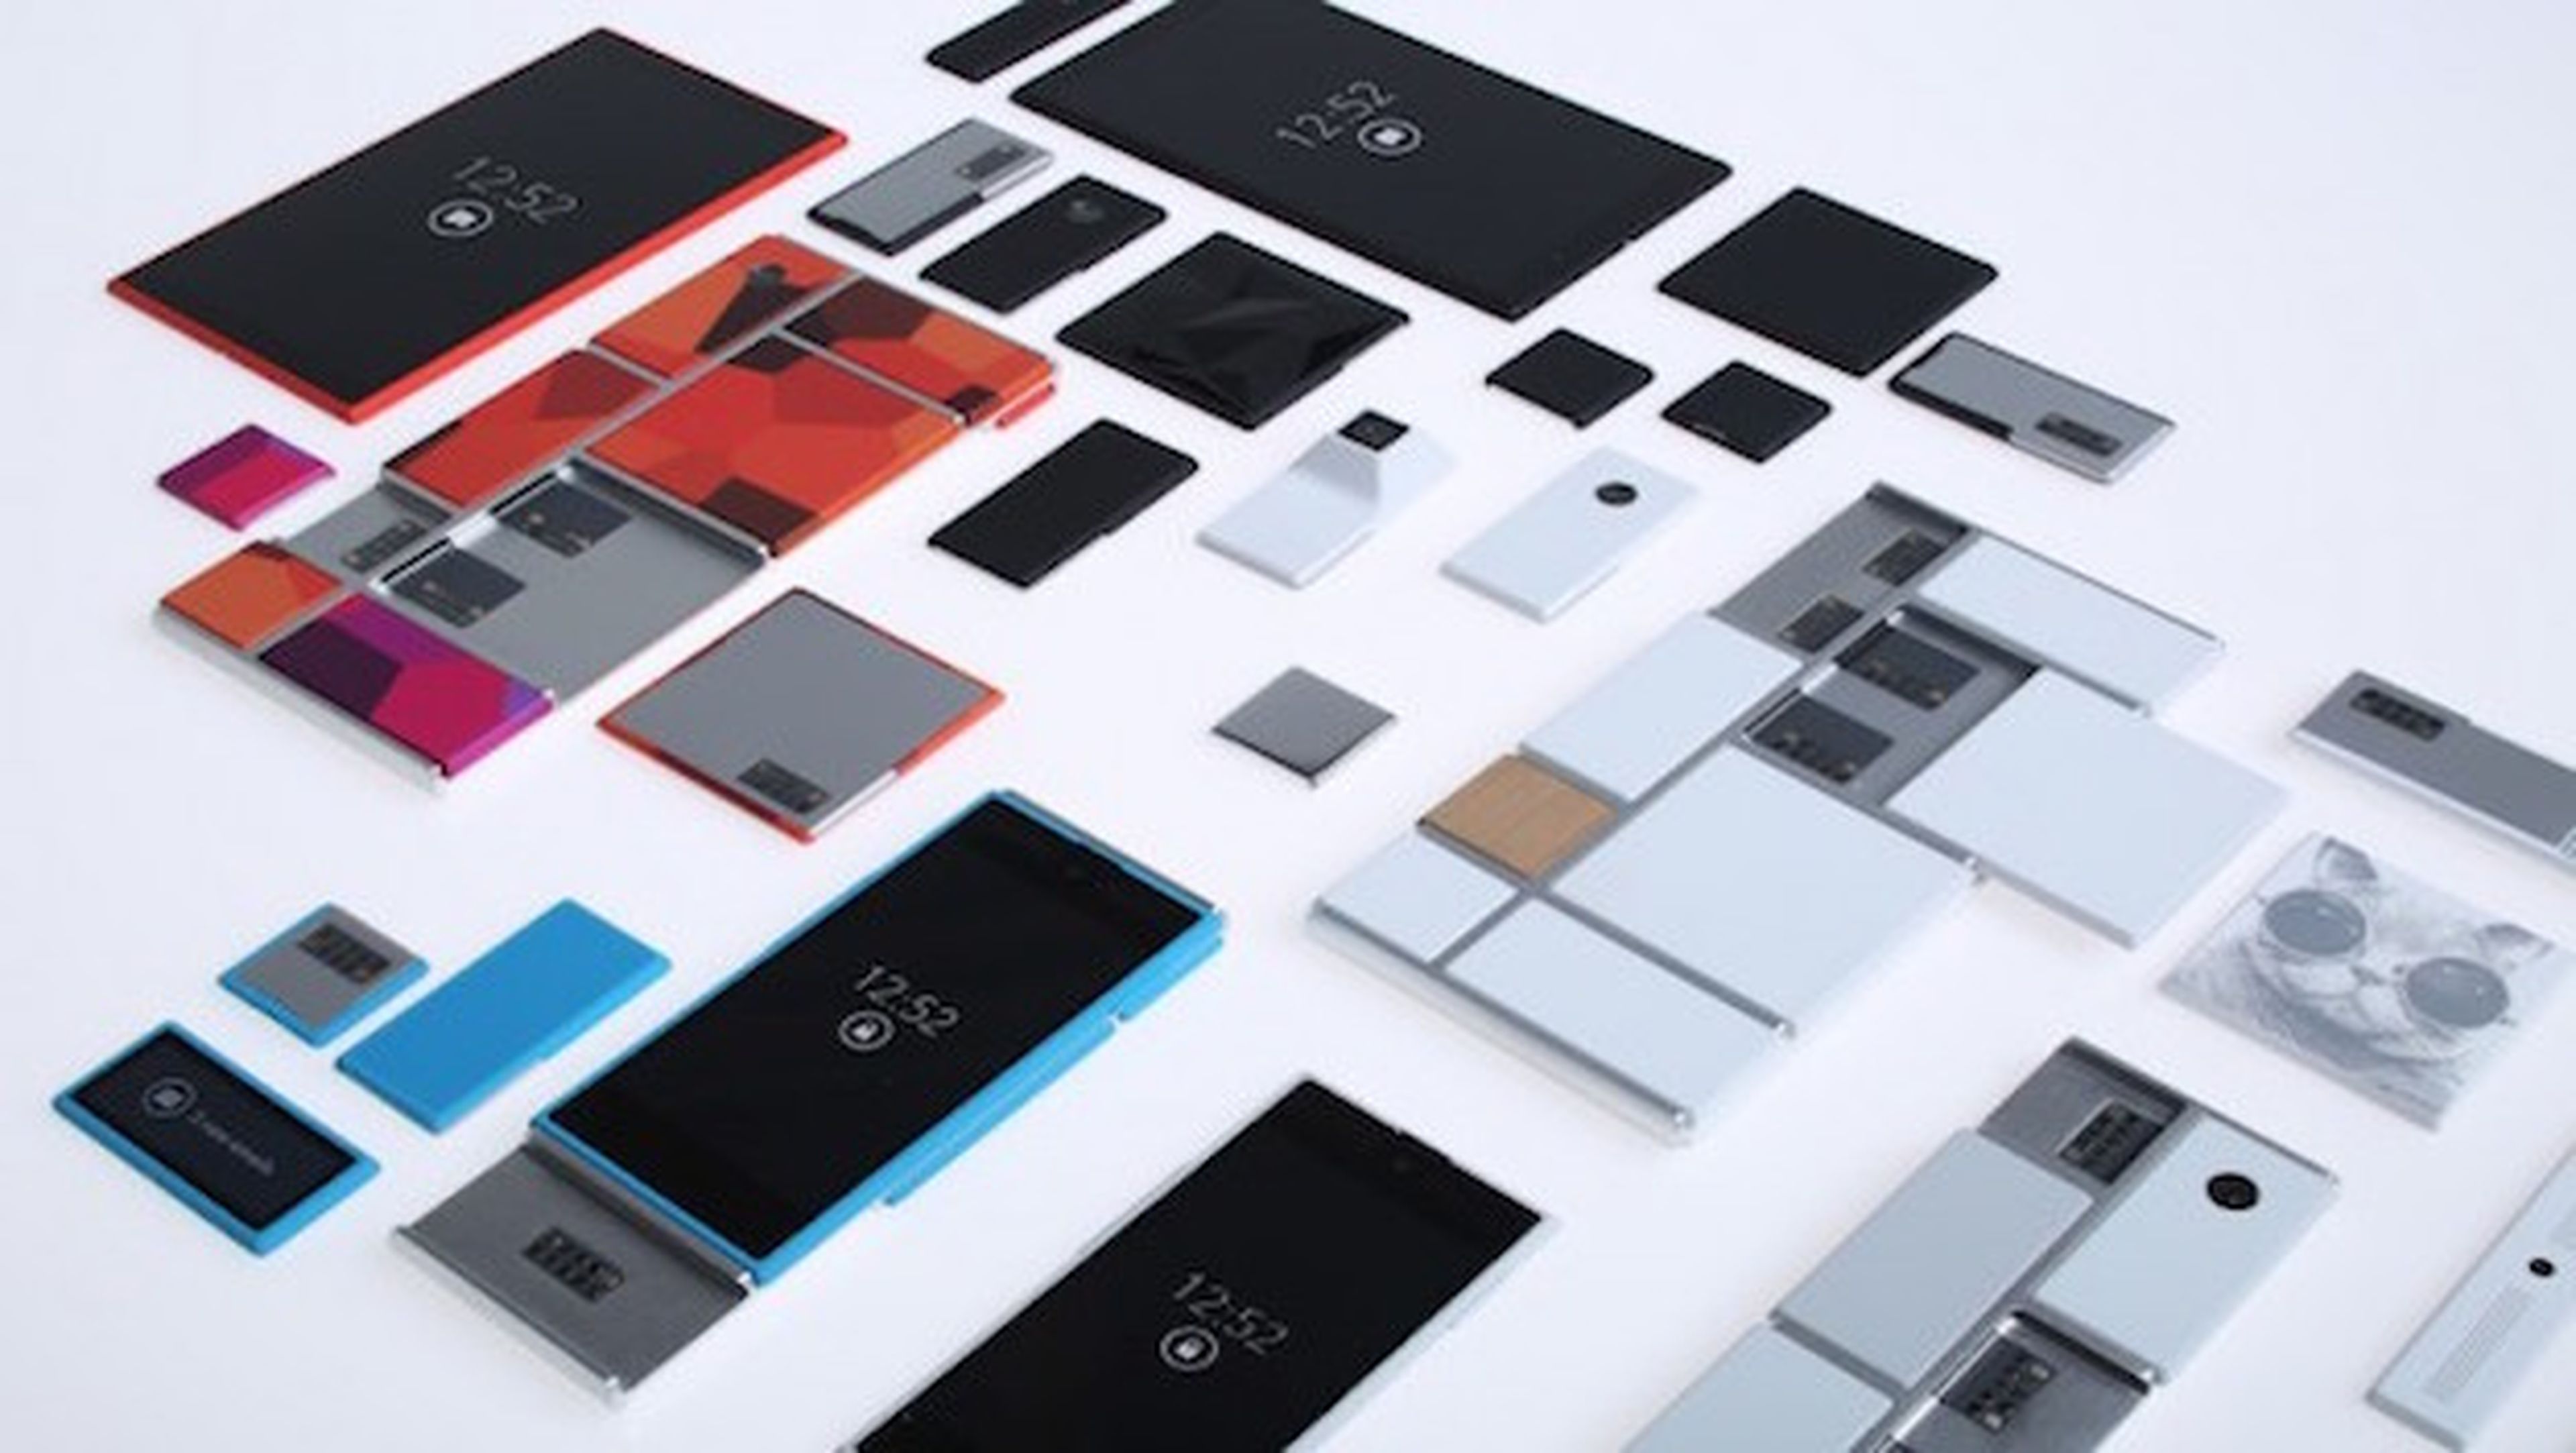 Project Ara espera ser el smartphone del futuro